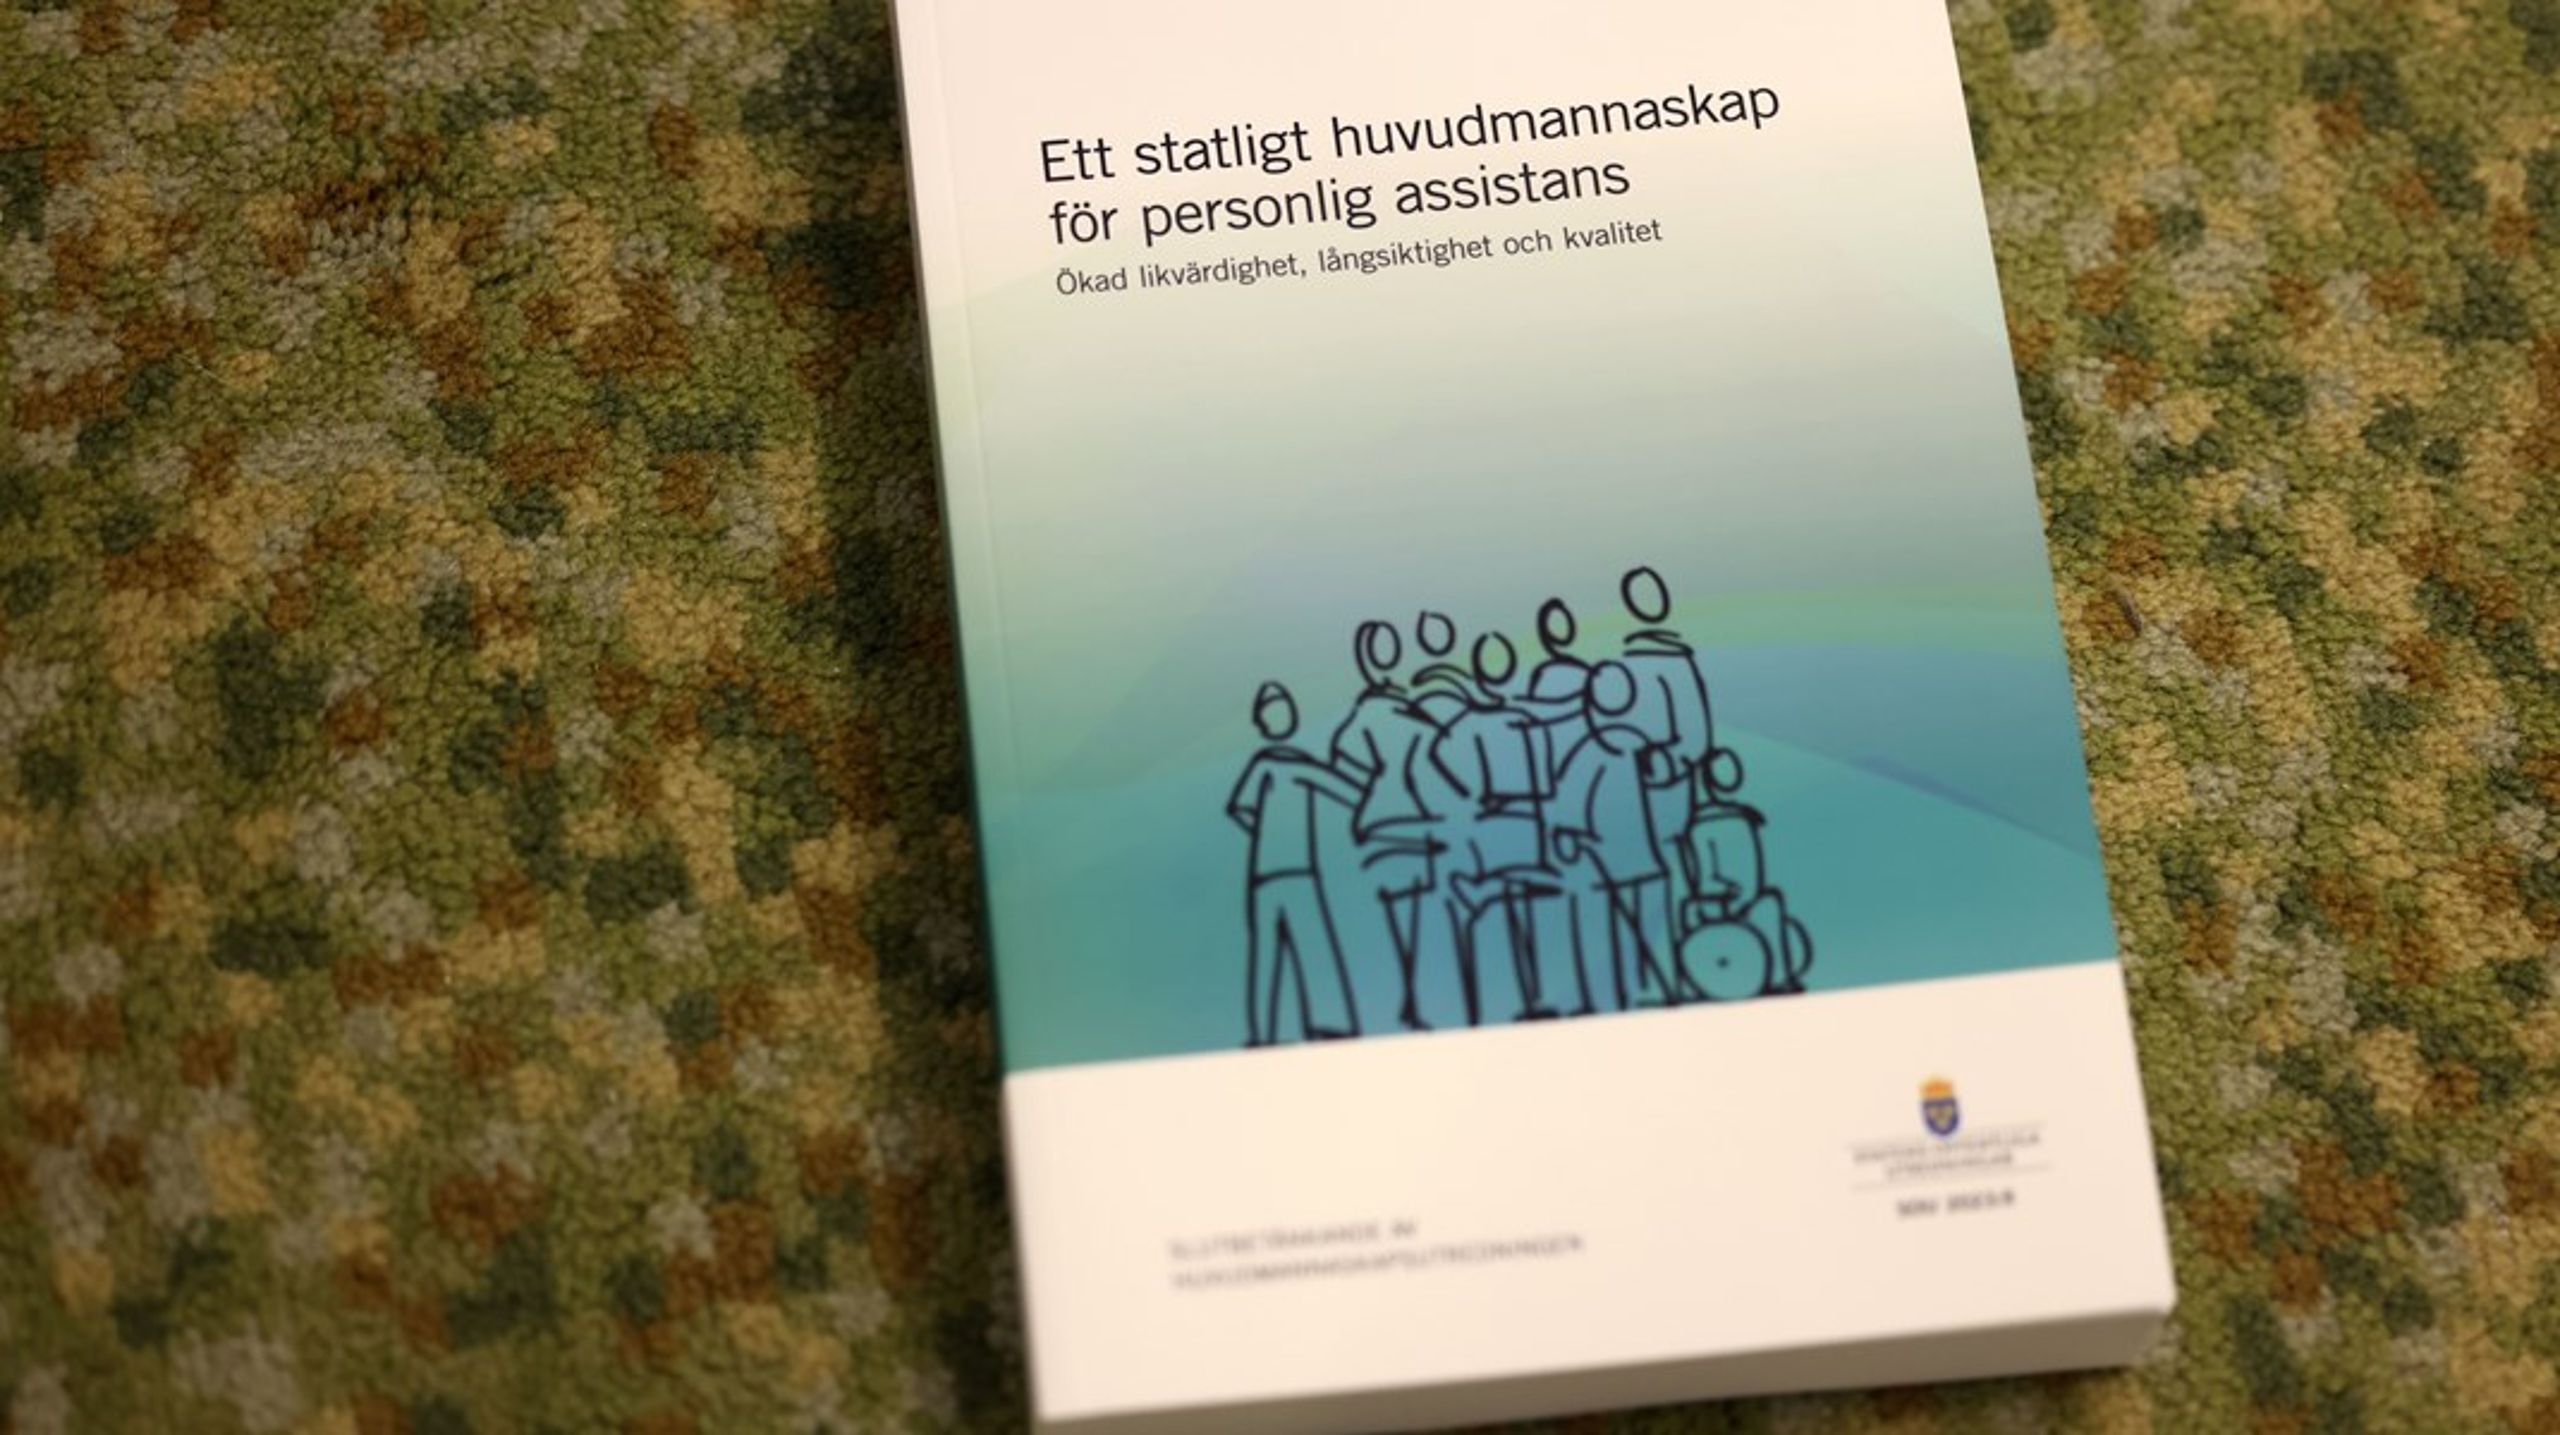 Sverigedemokraternas utgångspunkt är att personer med funktionsnedsättning ska ha likvärdiga levnadsförhållanden som övrig befolkning, skriver debattören.&nbsp;